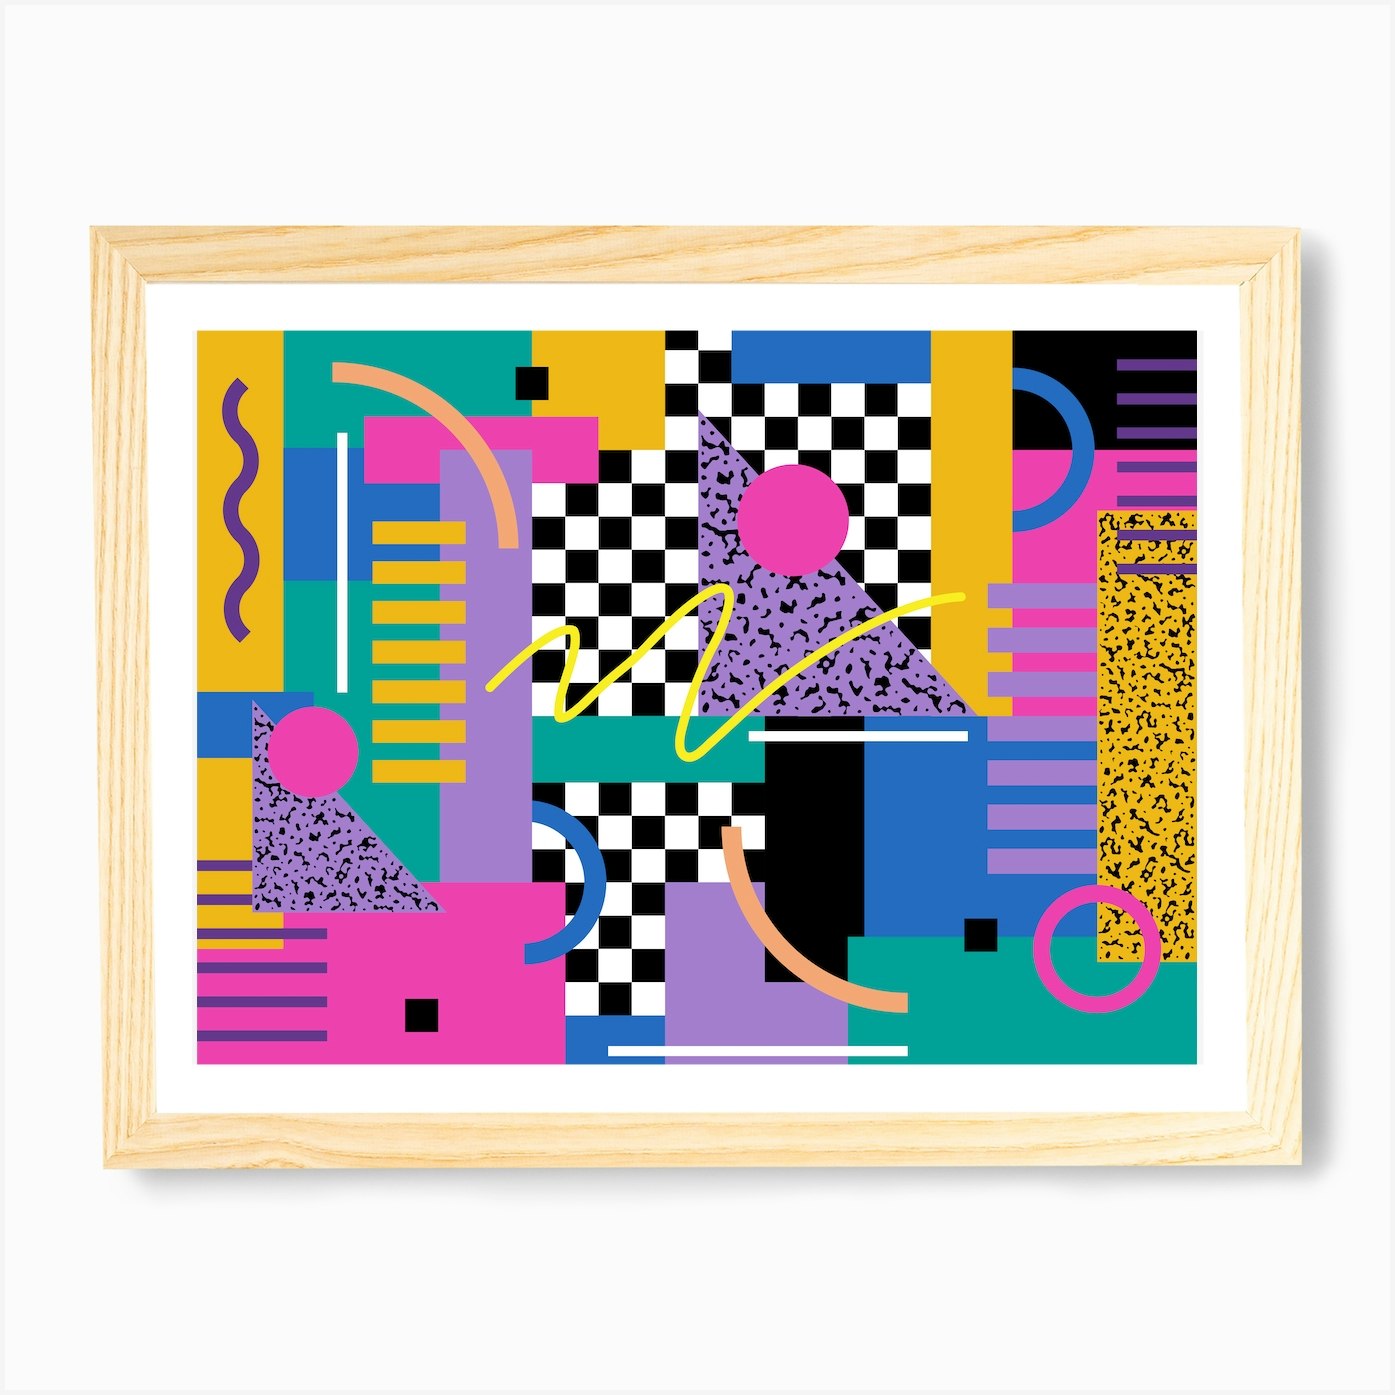 Memphis Pattern 80s Retro Vaporwave 90s Art Art Print by Studio Memphis  Waves - Fy